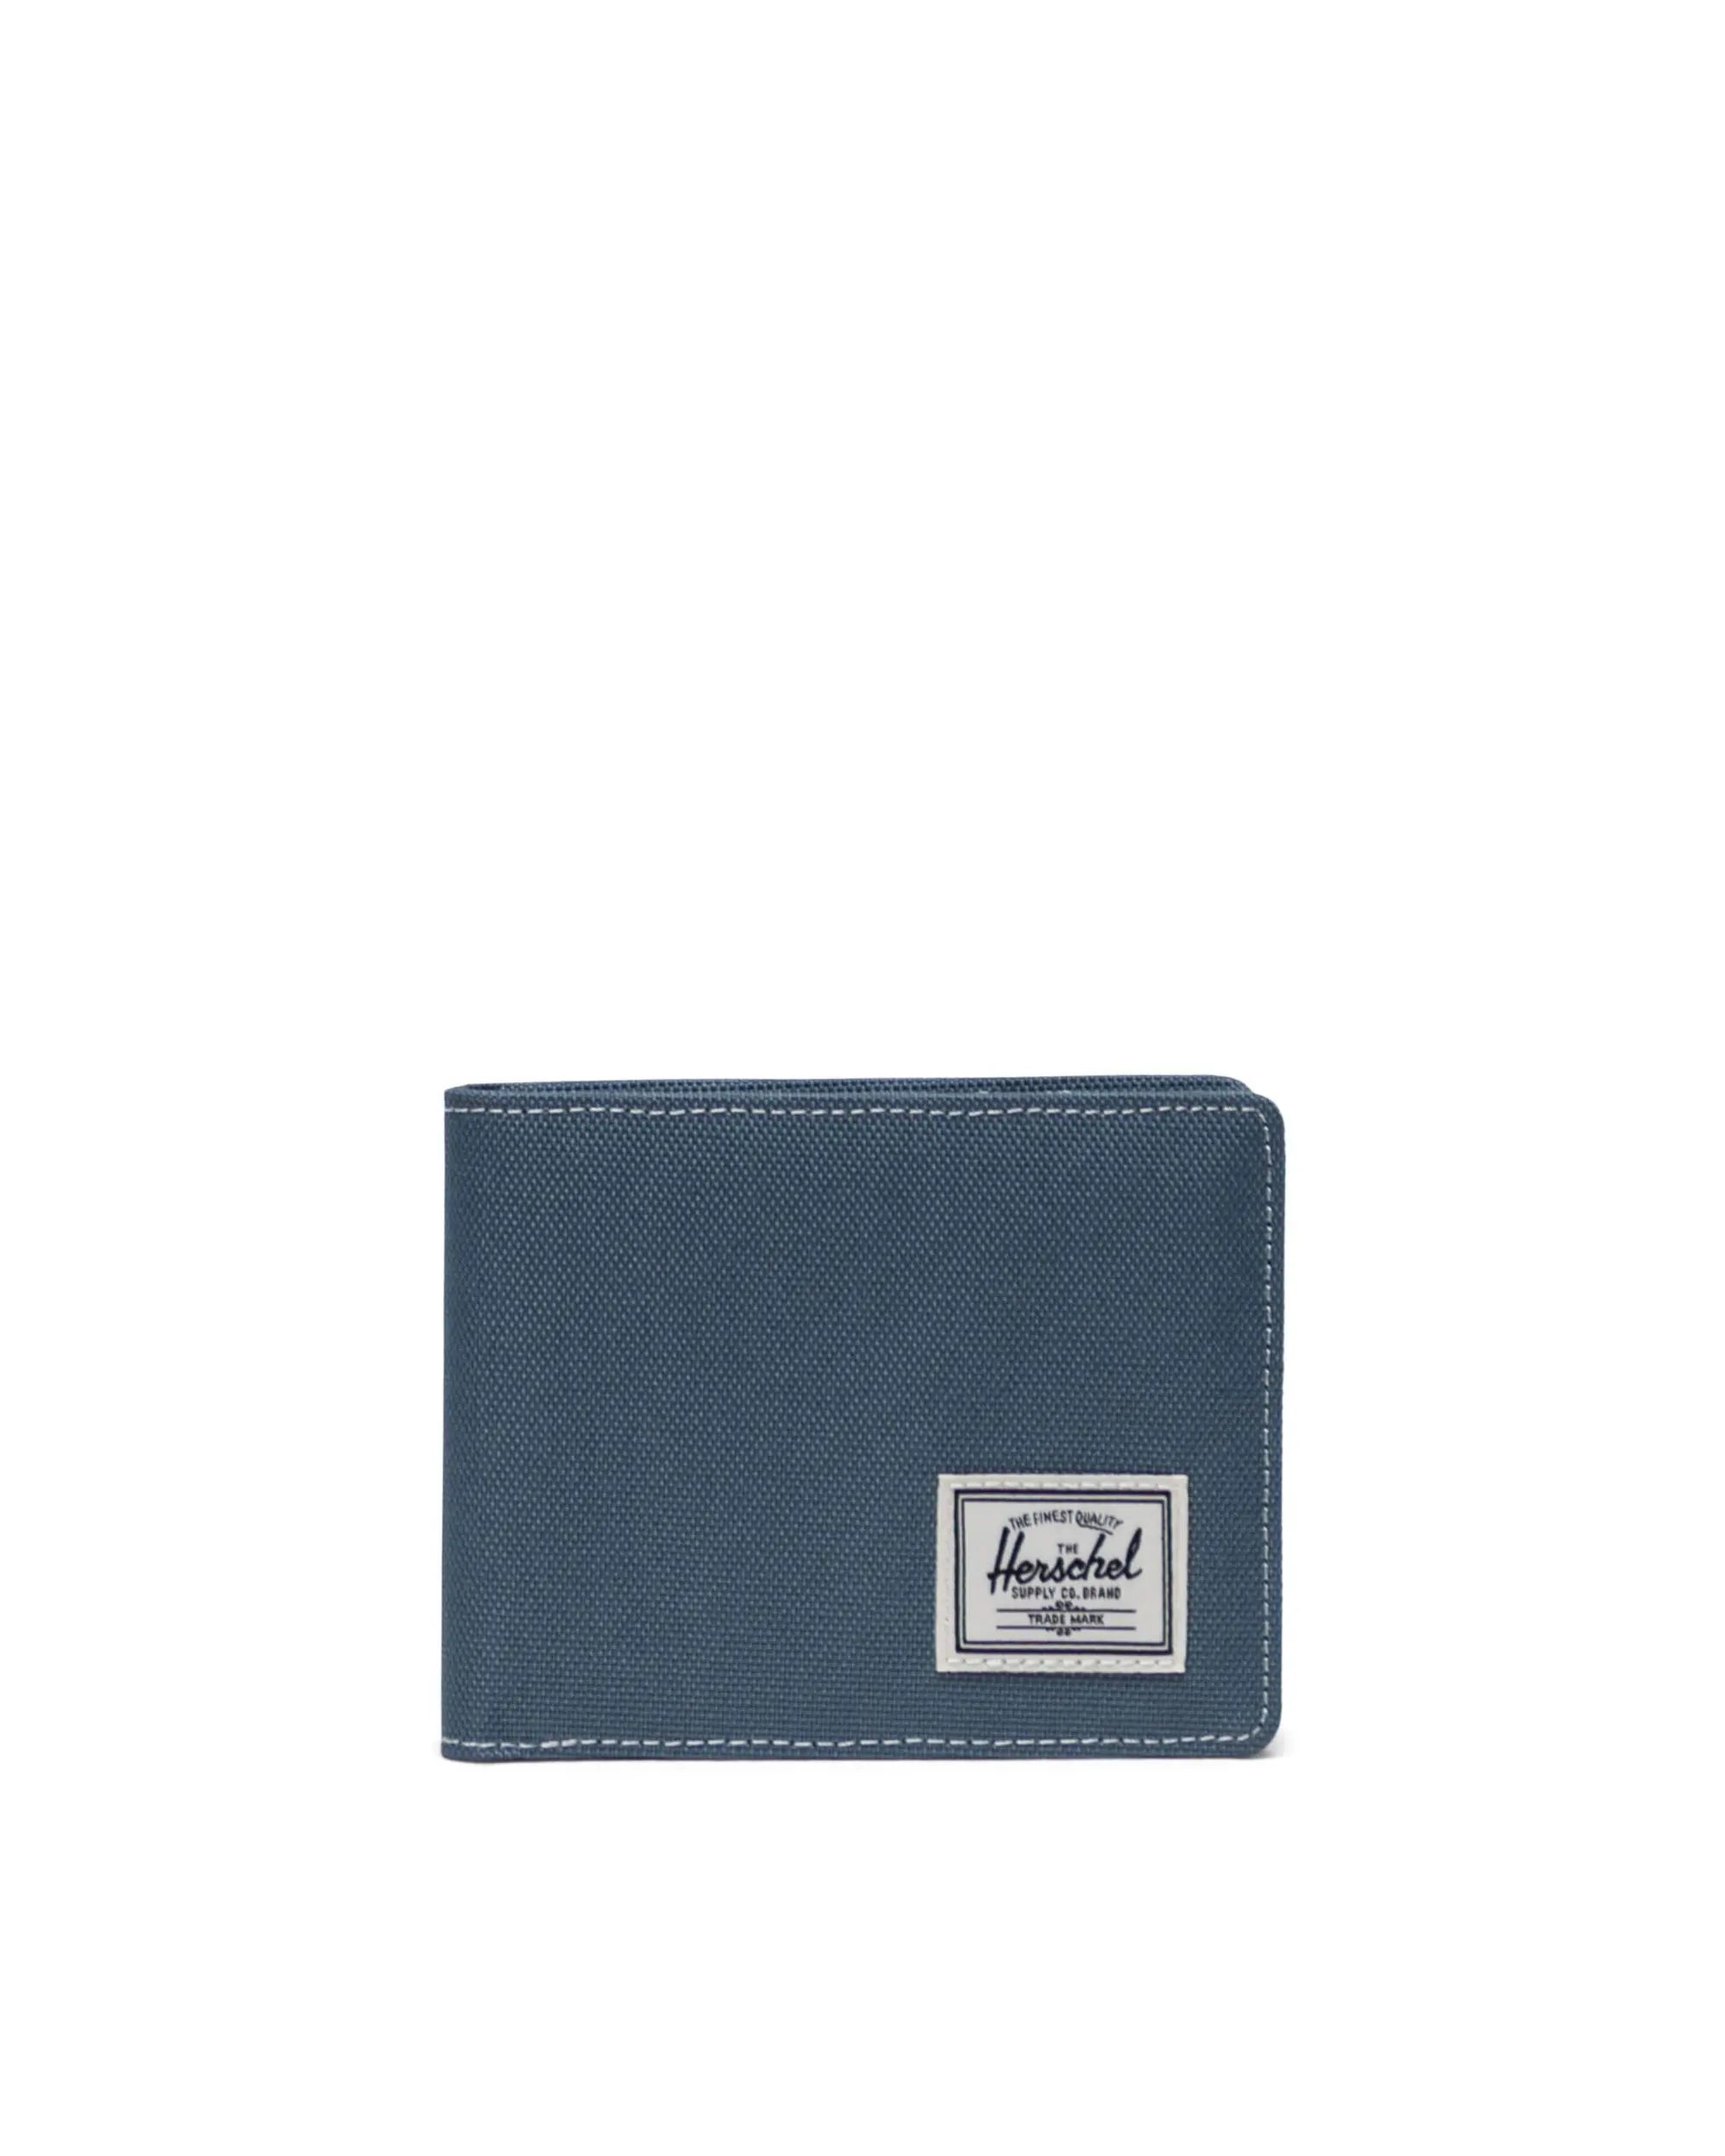 HERSCHEL Roy Wallet Blue Mirage/White Stitch Men's Wallets Herschel Supply Company 